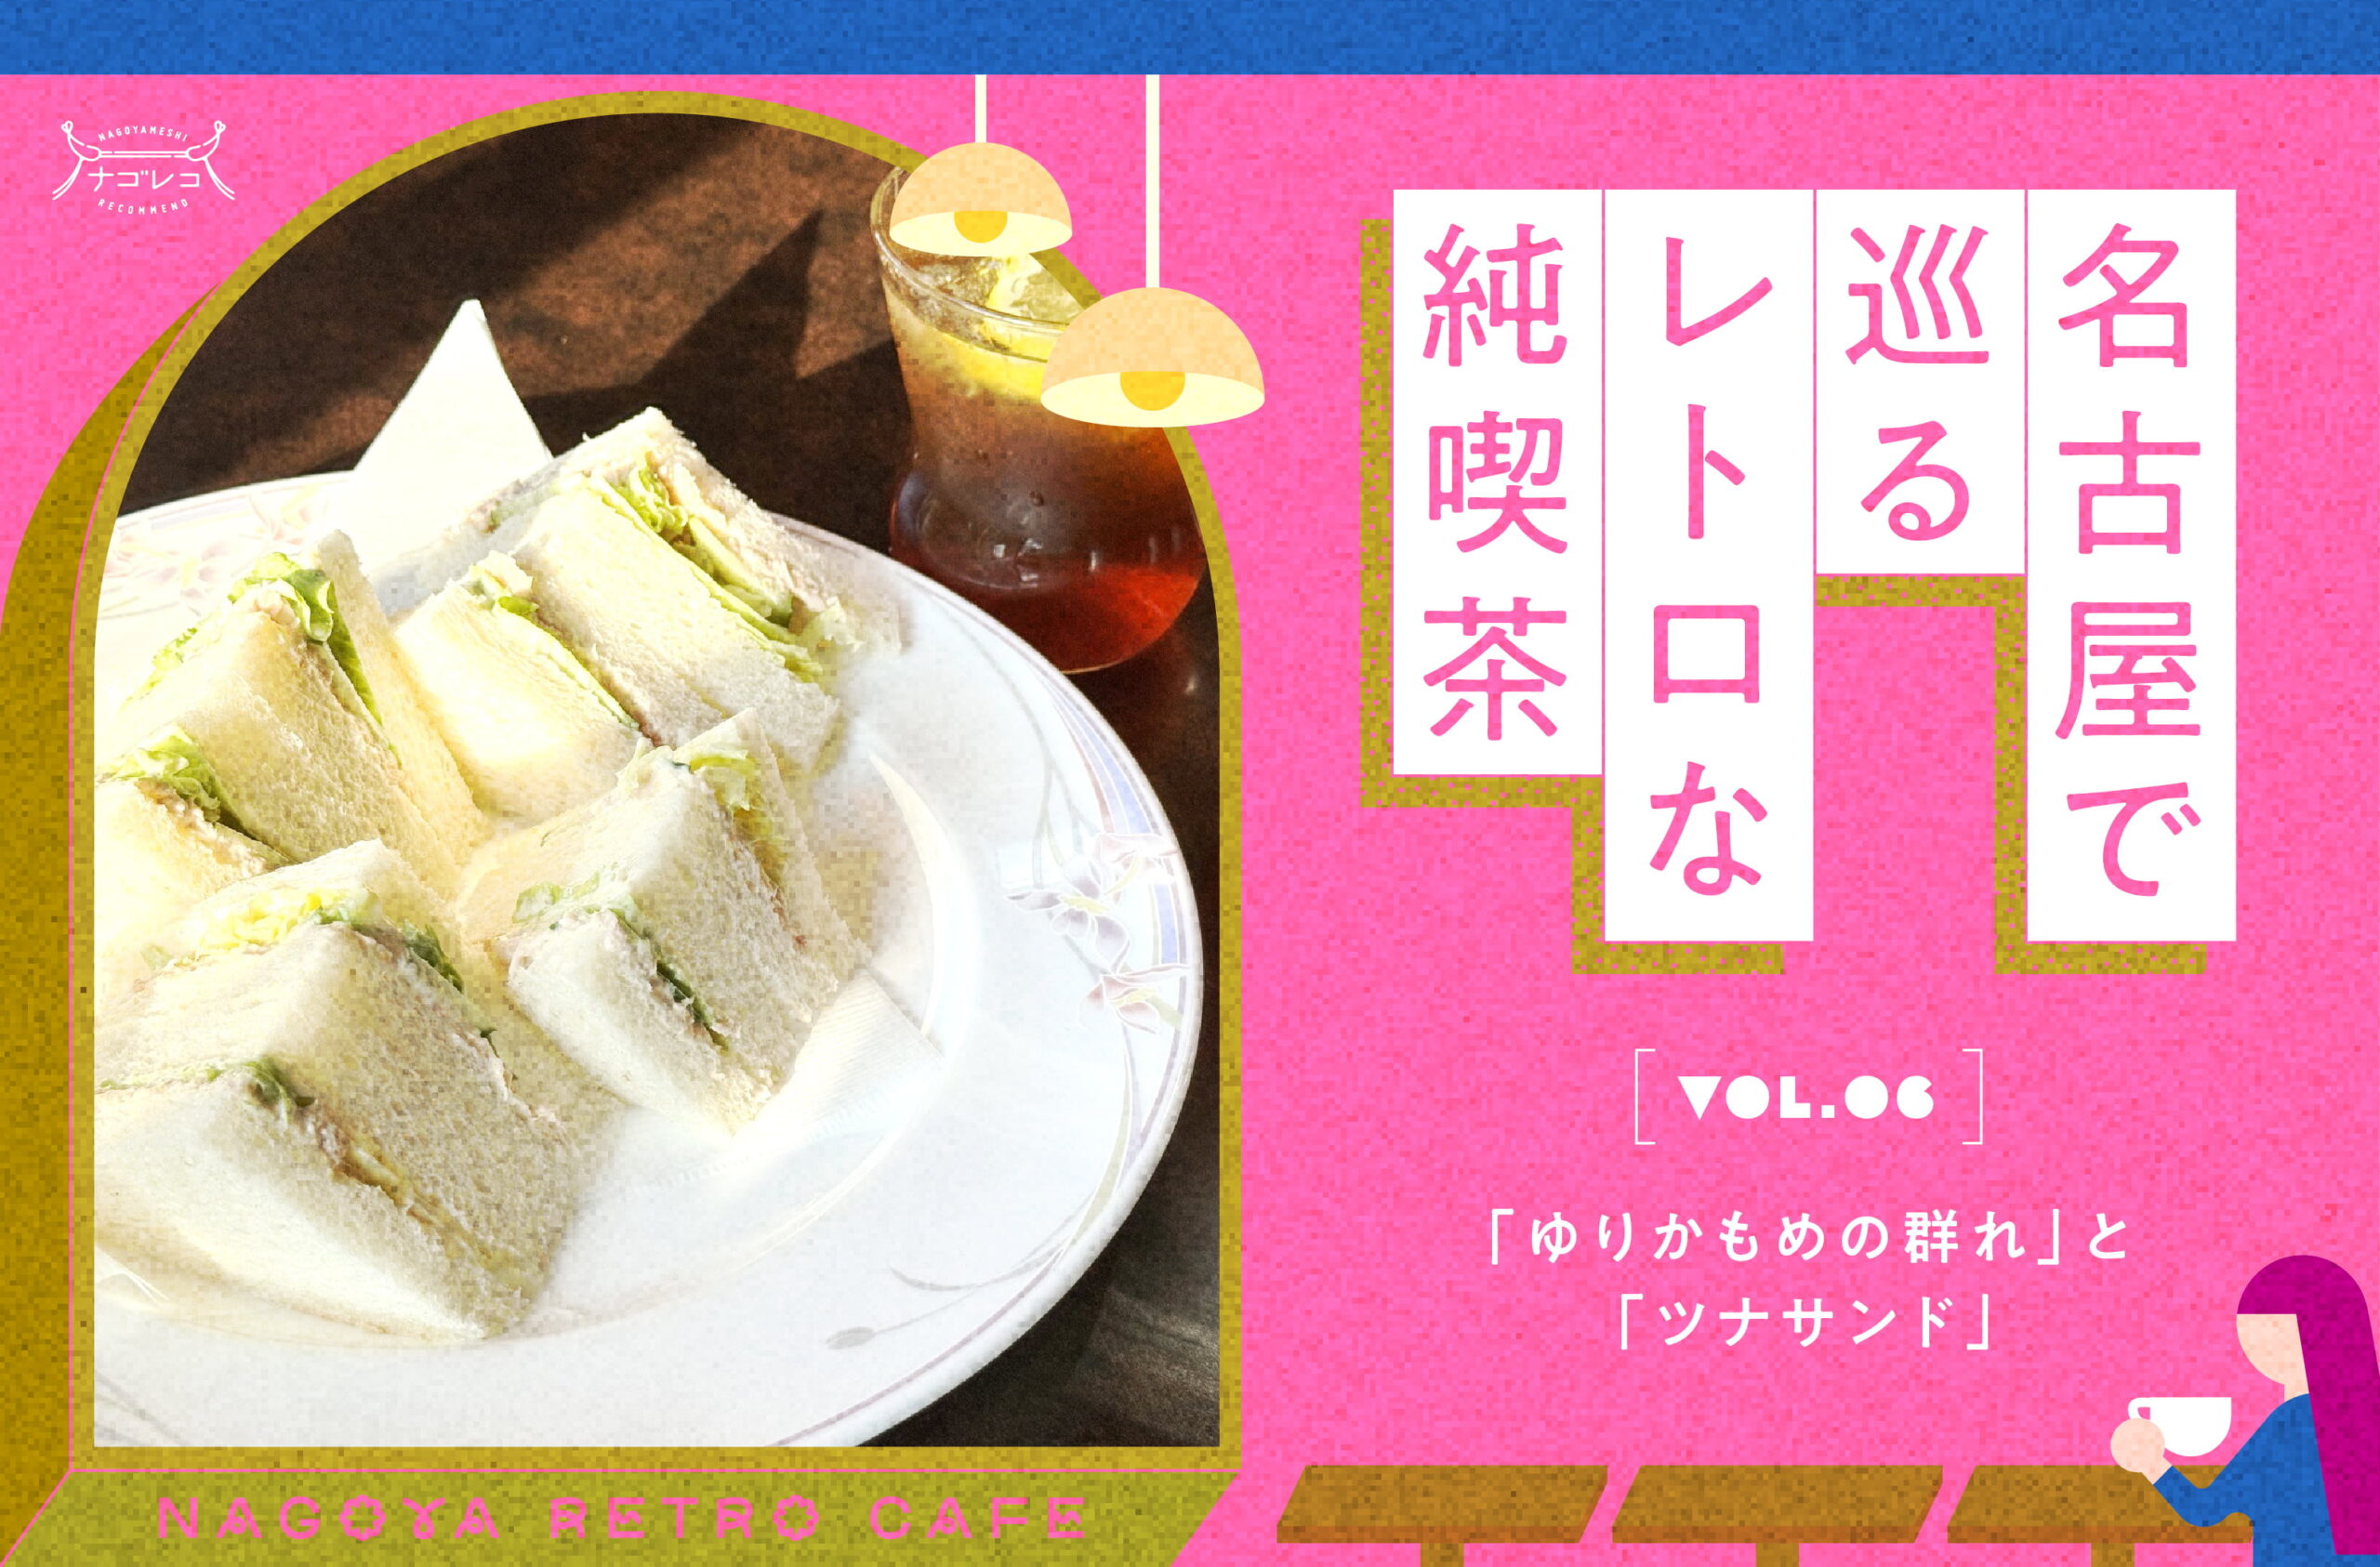 名古屋で巡るレトロな純喫茶 vol.6「ゆりかもめの群れ」と「ツナサンド」